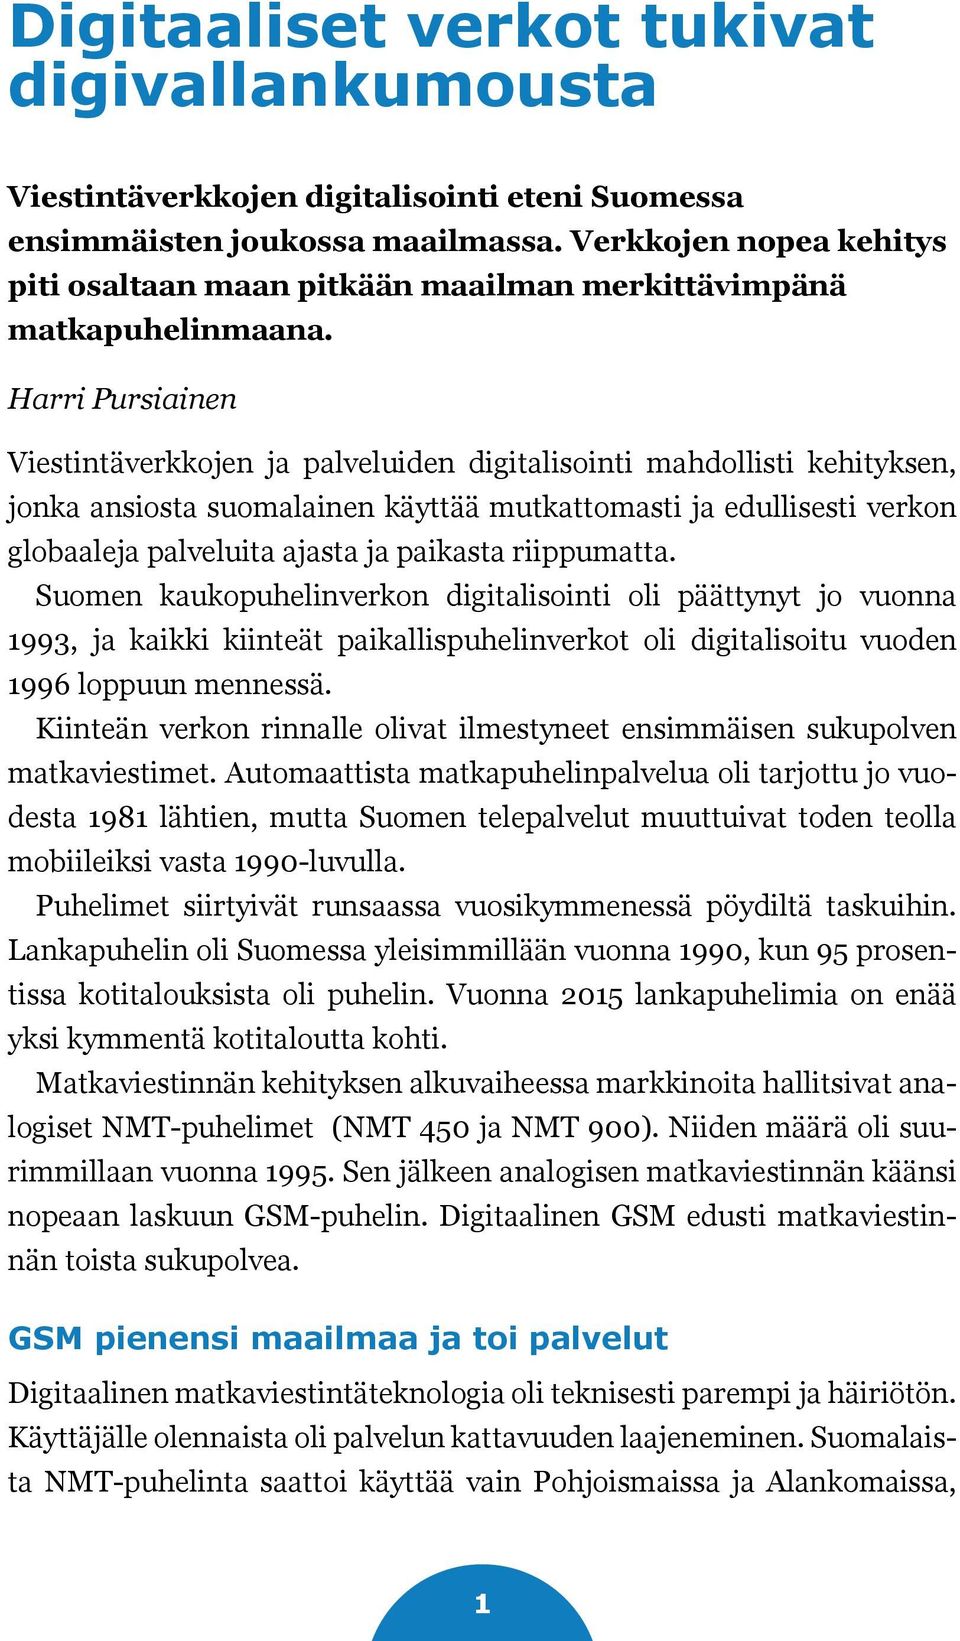 Harri Pursiainen Viestintäverkkojen ja palveluiden digitalisointi mahdollisti kehityksen, jonka ansiosta suomalainen käyttää mutkattomasti ja edullisesti verkon globaaleja palveluita ajasta ja